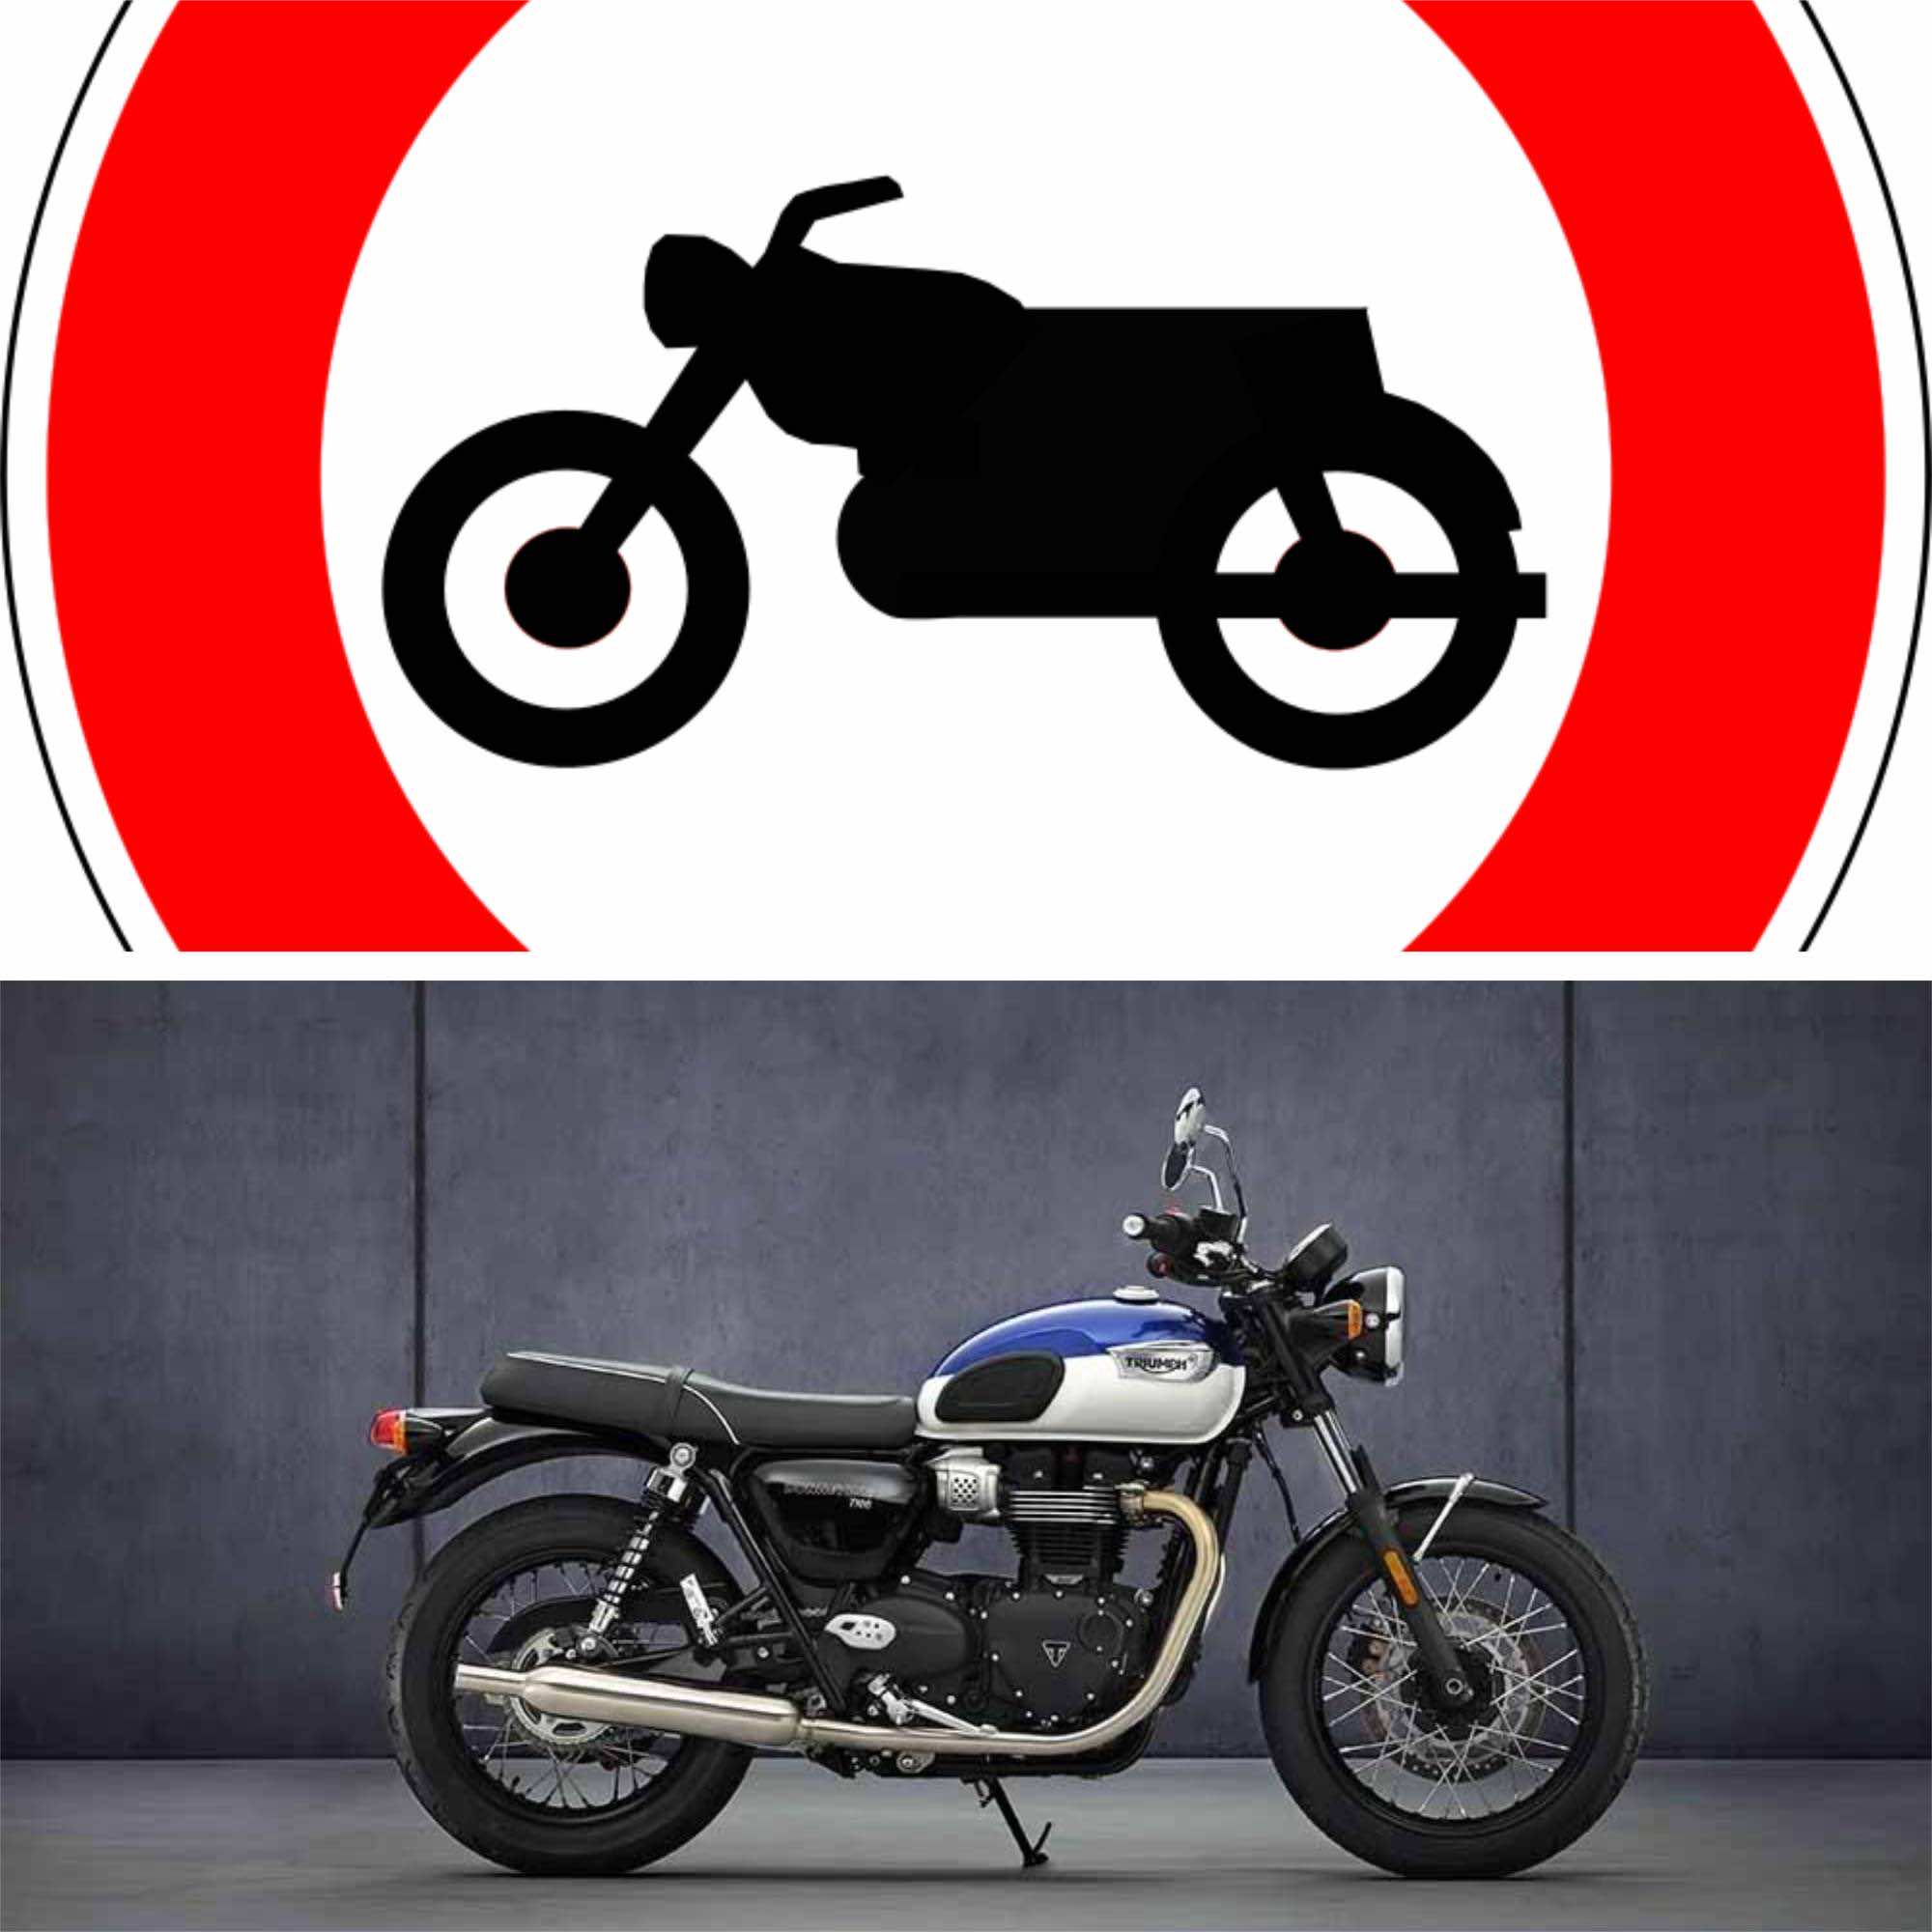 σήμανση απαγόρευσης μοτοσικλέτας και μοτοσικλέτα 